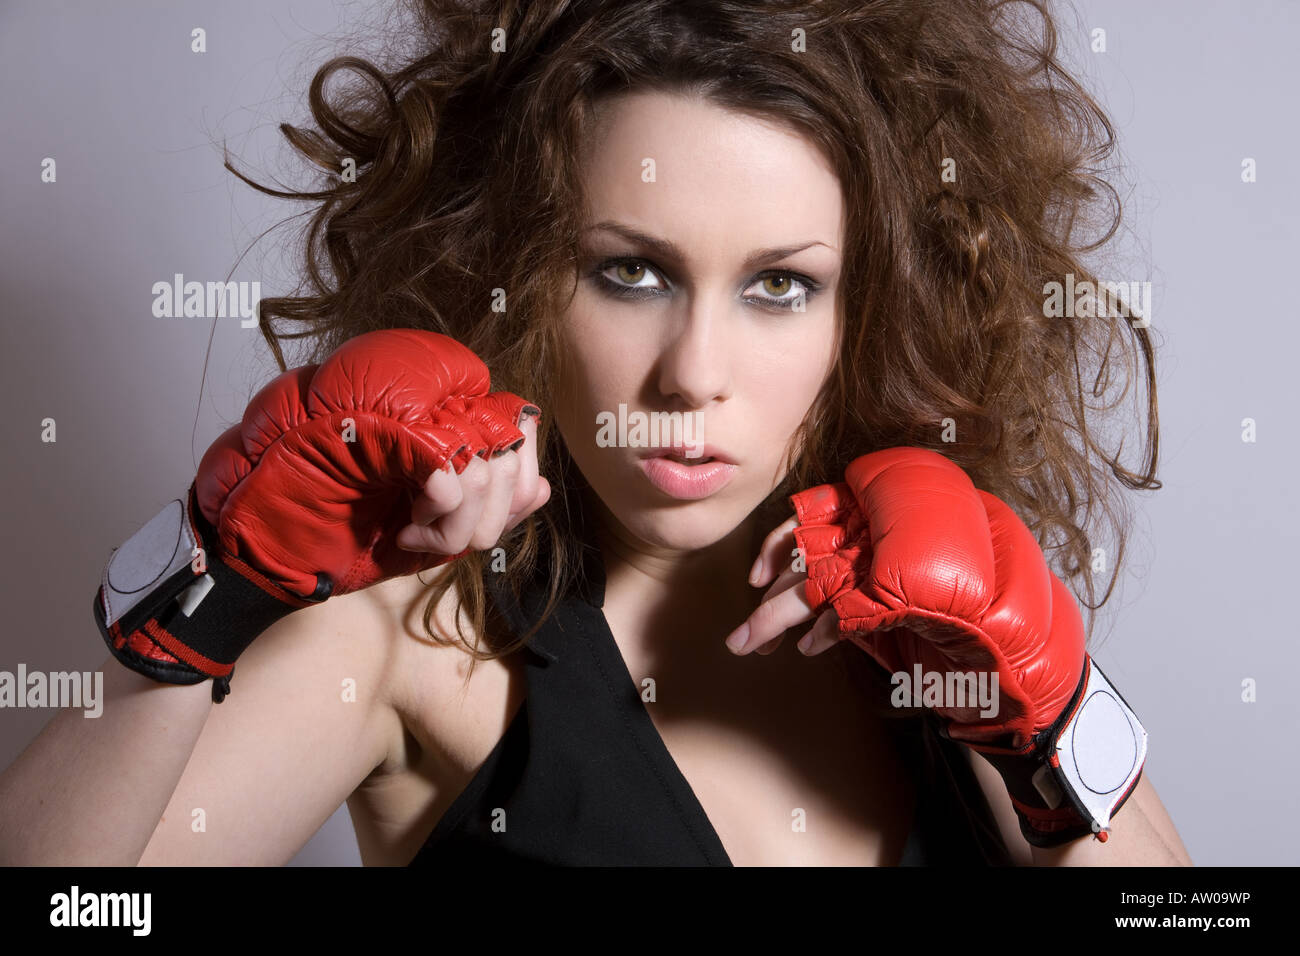 Belle femme avec cheveux sauvages et des gants de boxe Banque D'Images